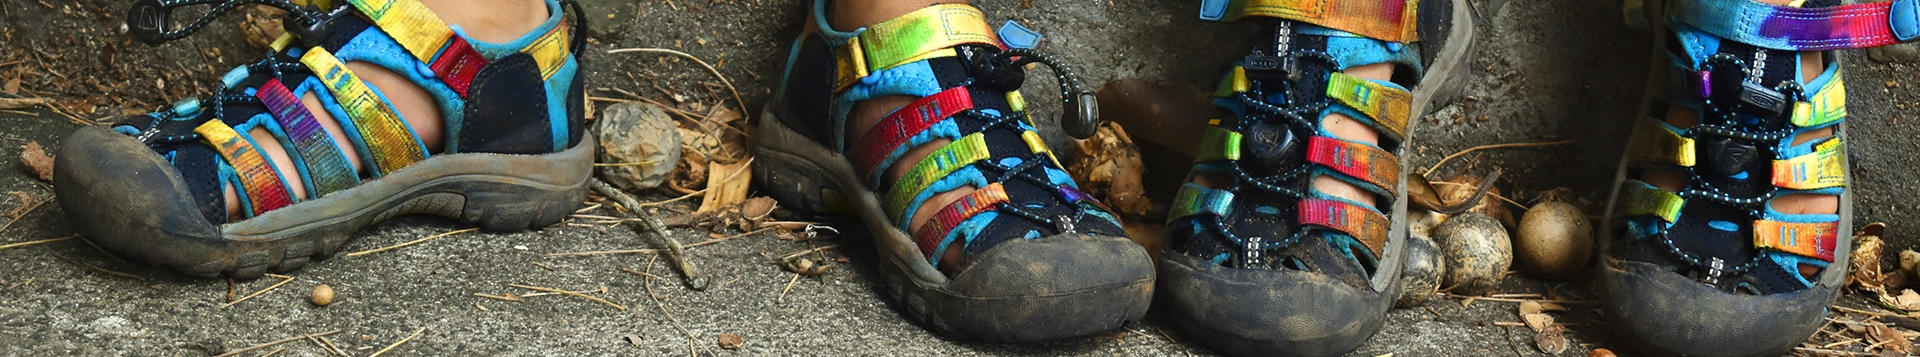 Buty dziecięce KEEN - sprawdzą się w każdych warunkach